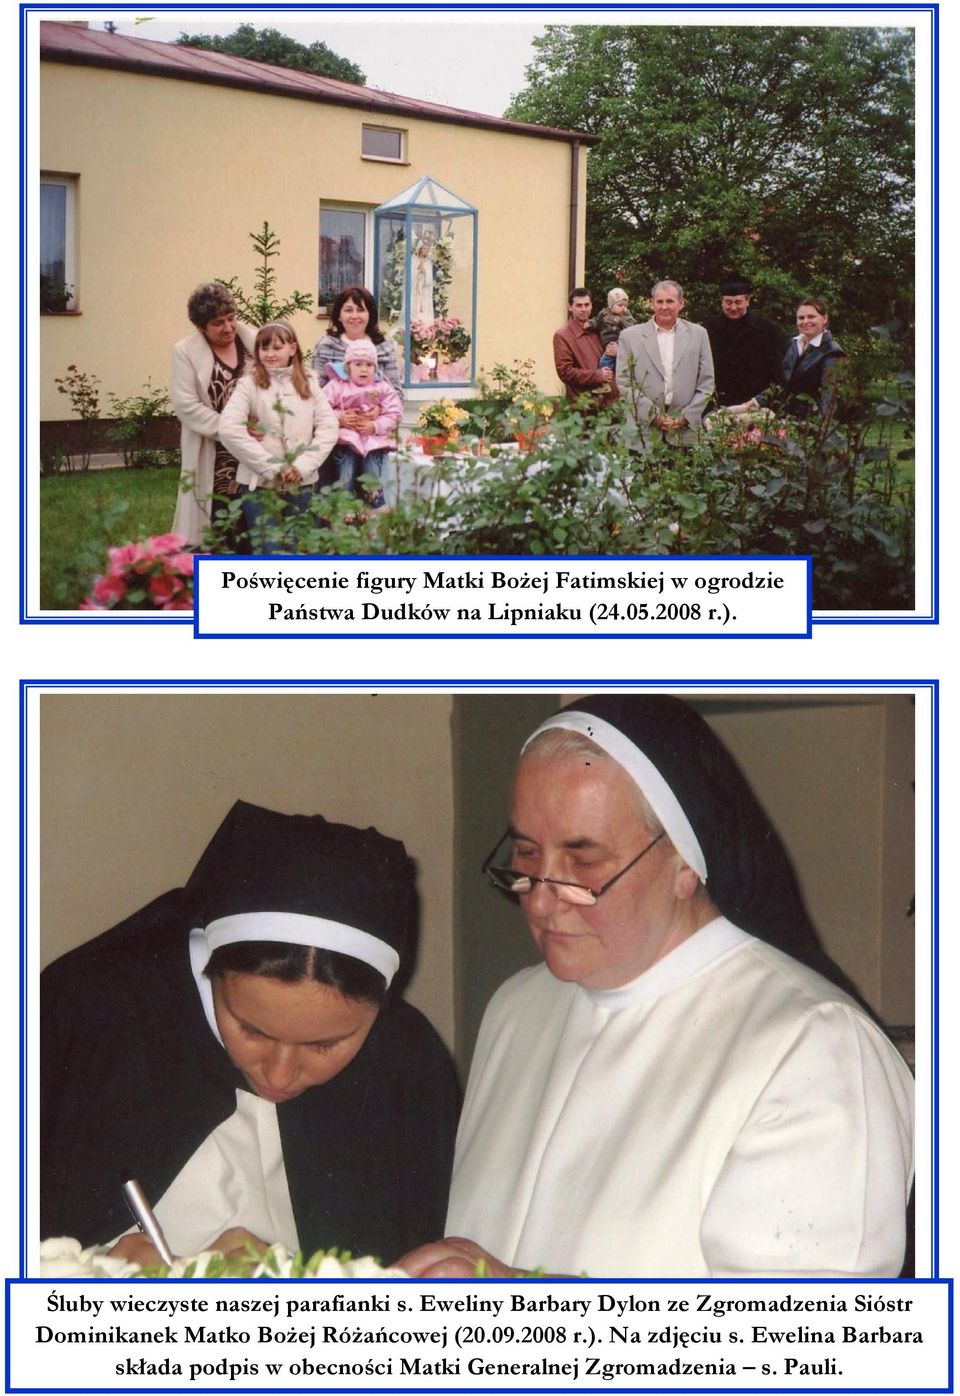 Eweliny Barbary Dylon ze Zgromadzenia Sióstr Dominikanek Matko Bożej Różańcowej